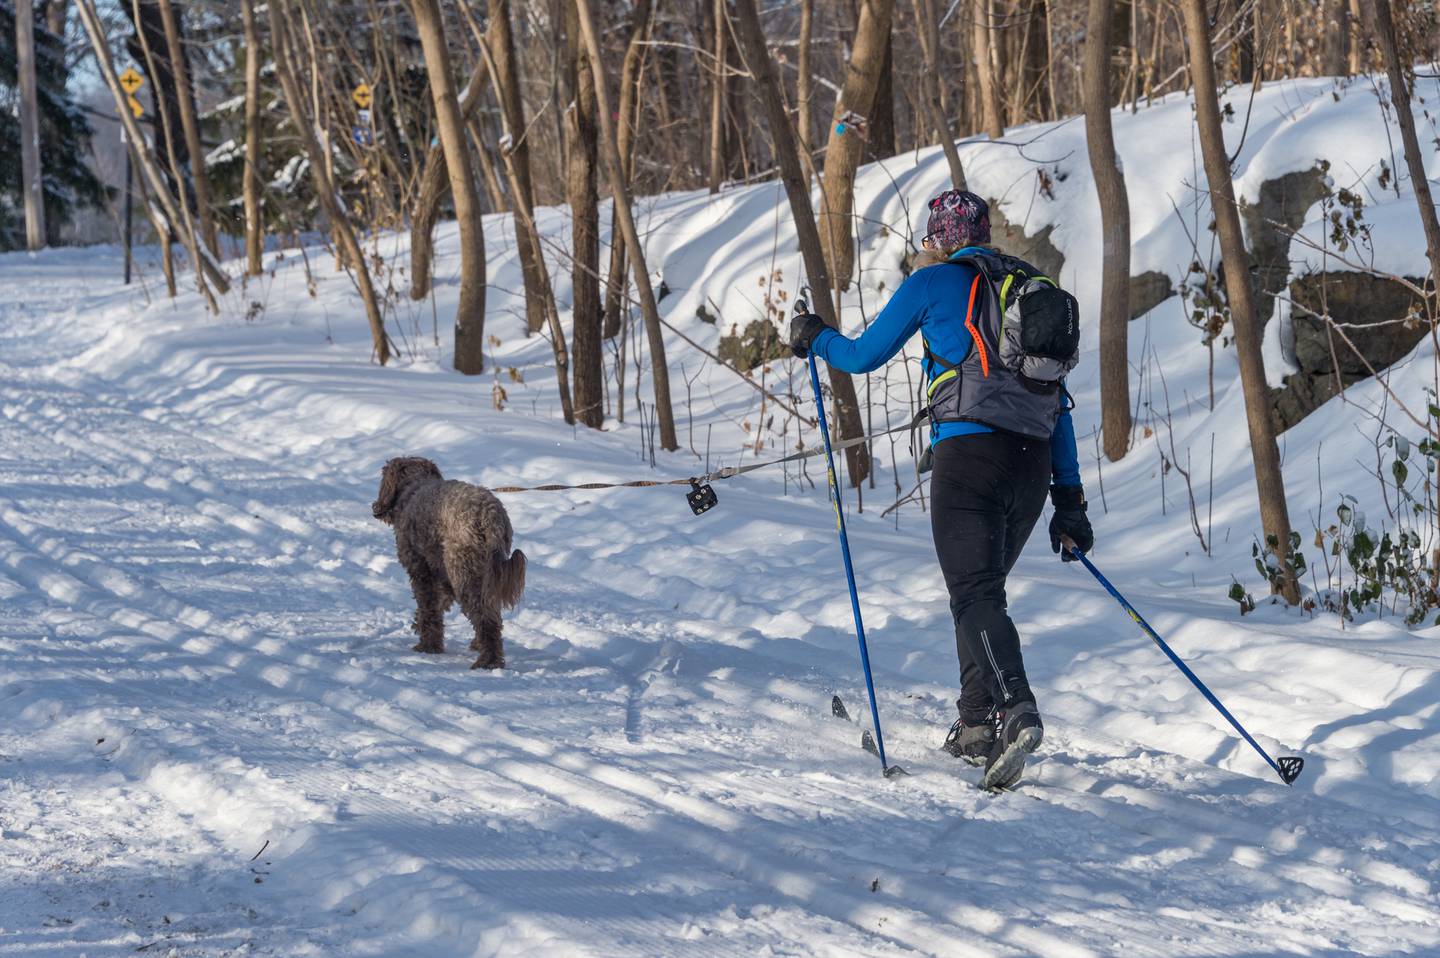 Nær sagt alle hunder kan bli fine skitur-kompiser. Men pass på å lære den grunnleggende trekkdressur, og ha riktig utstyr til hunden og deg selv.